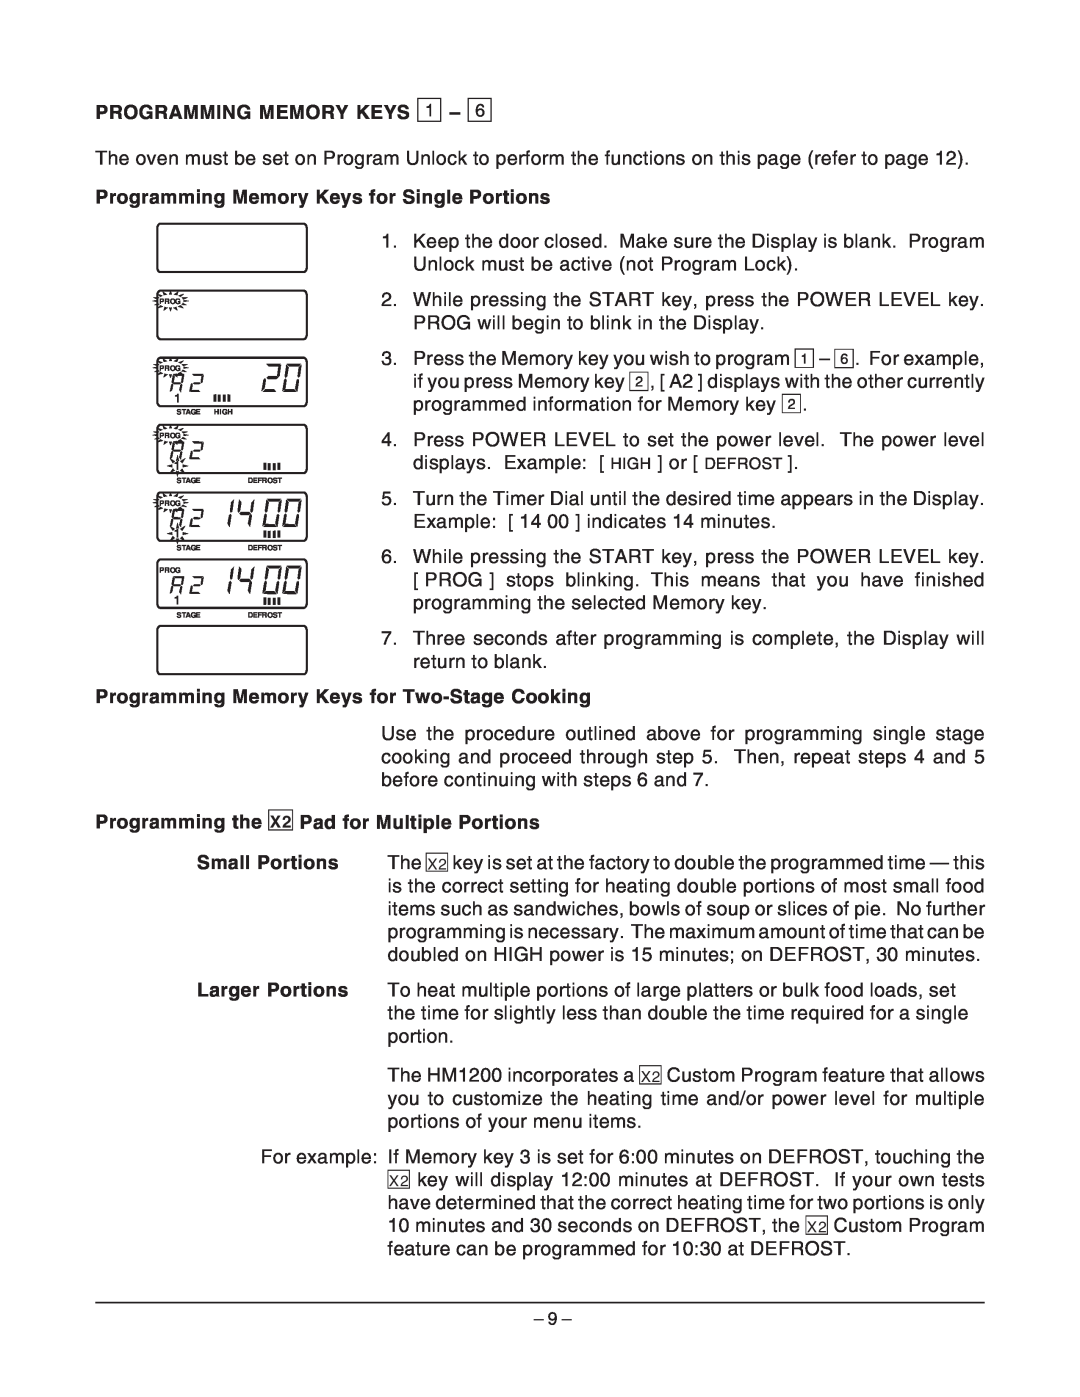 Hobart HM1200 manual Programming Memory Keys for Single Portions, Programming Memory Keys for Two-Stage Cooking 